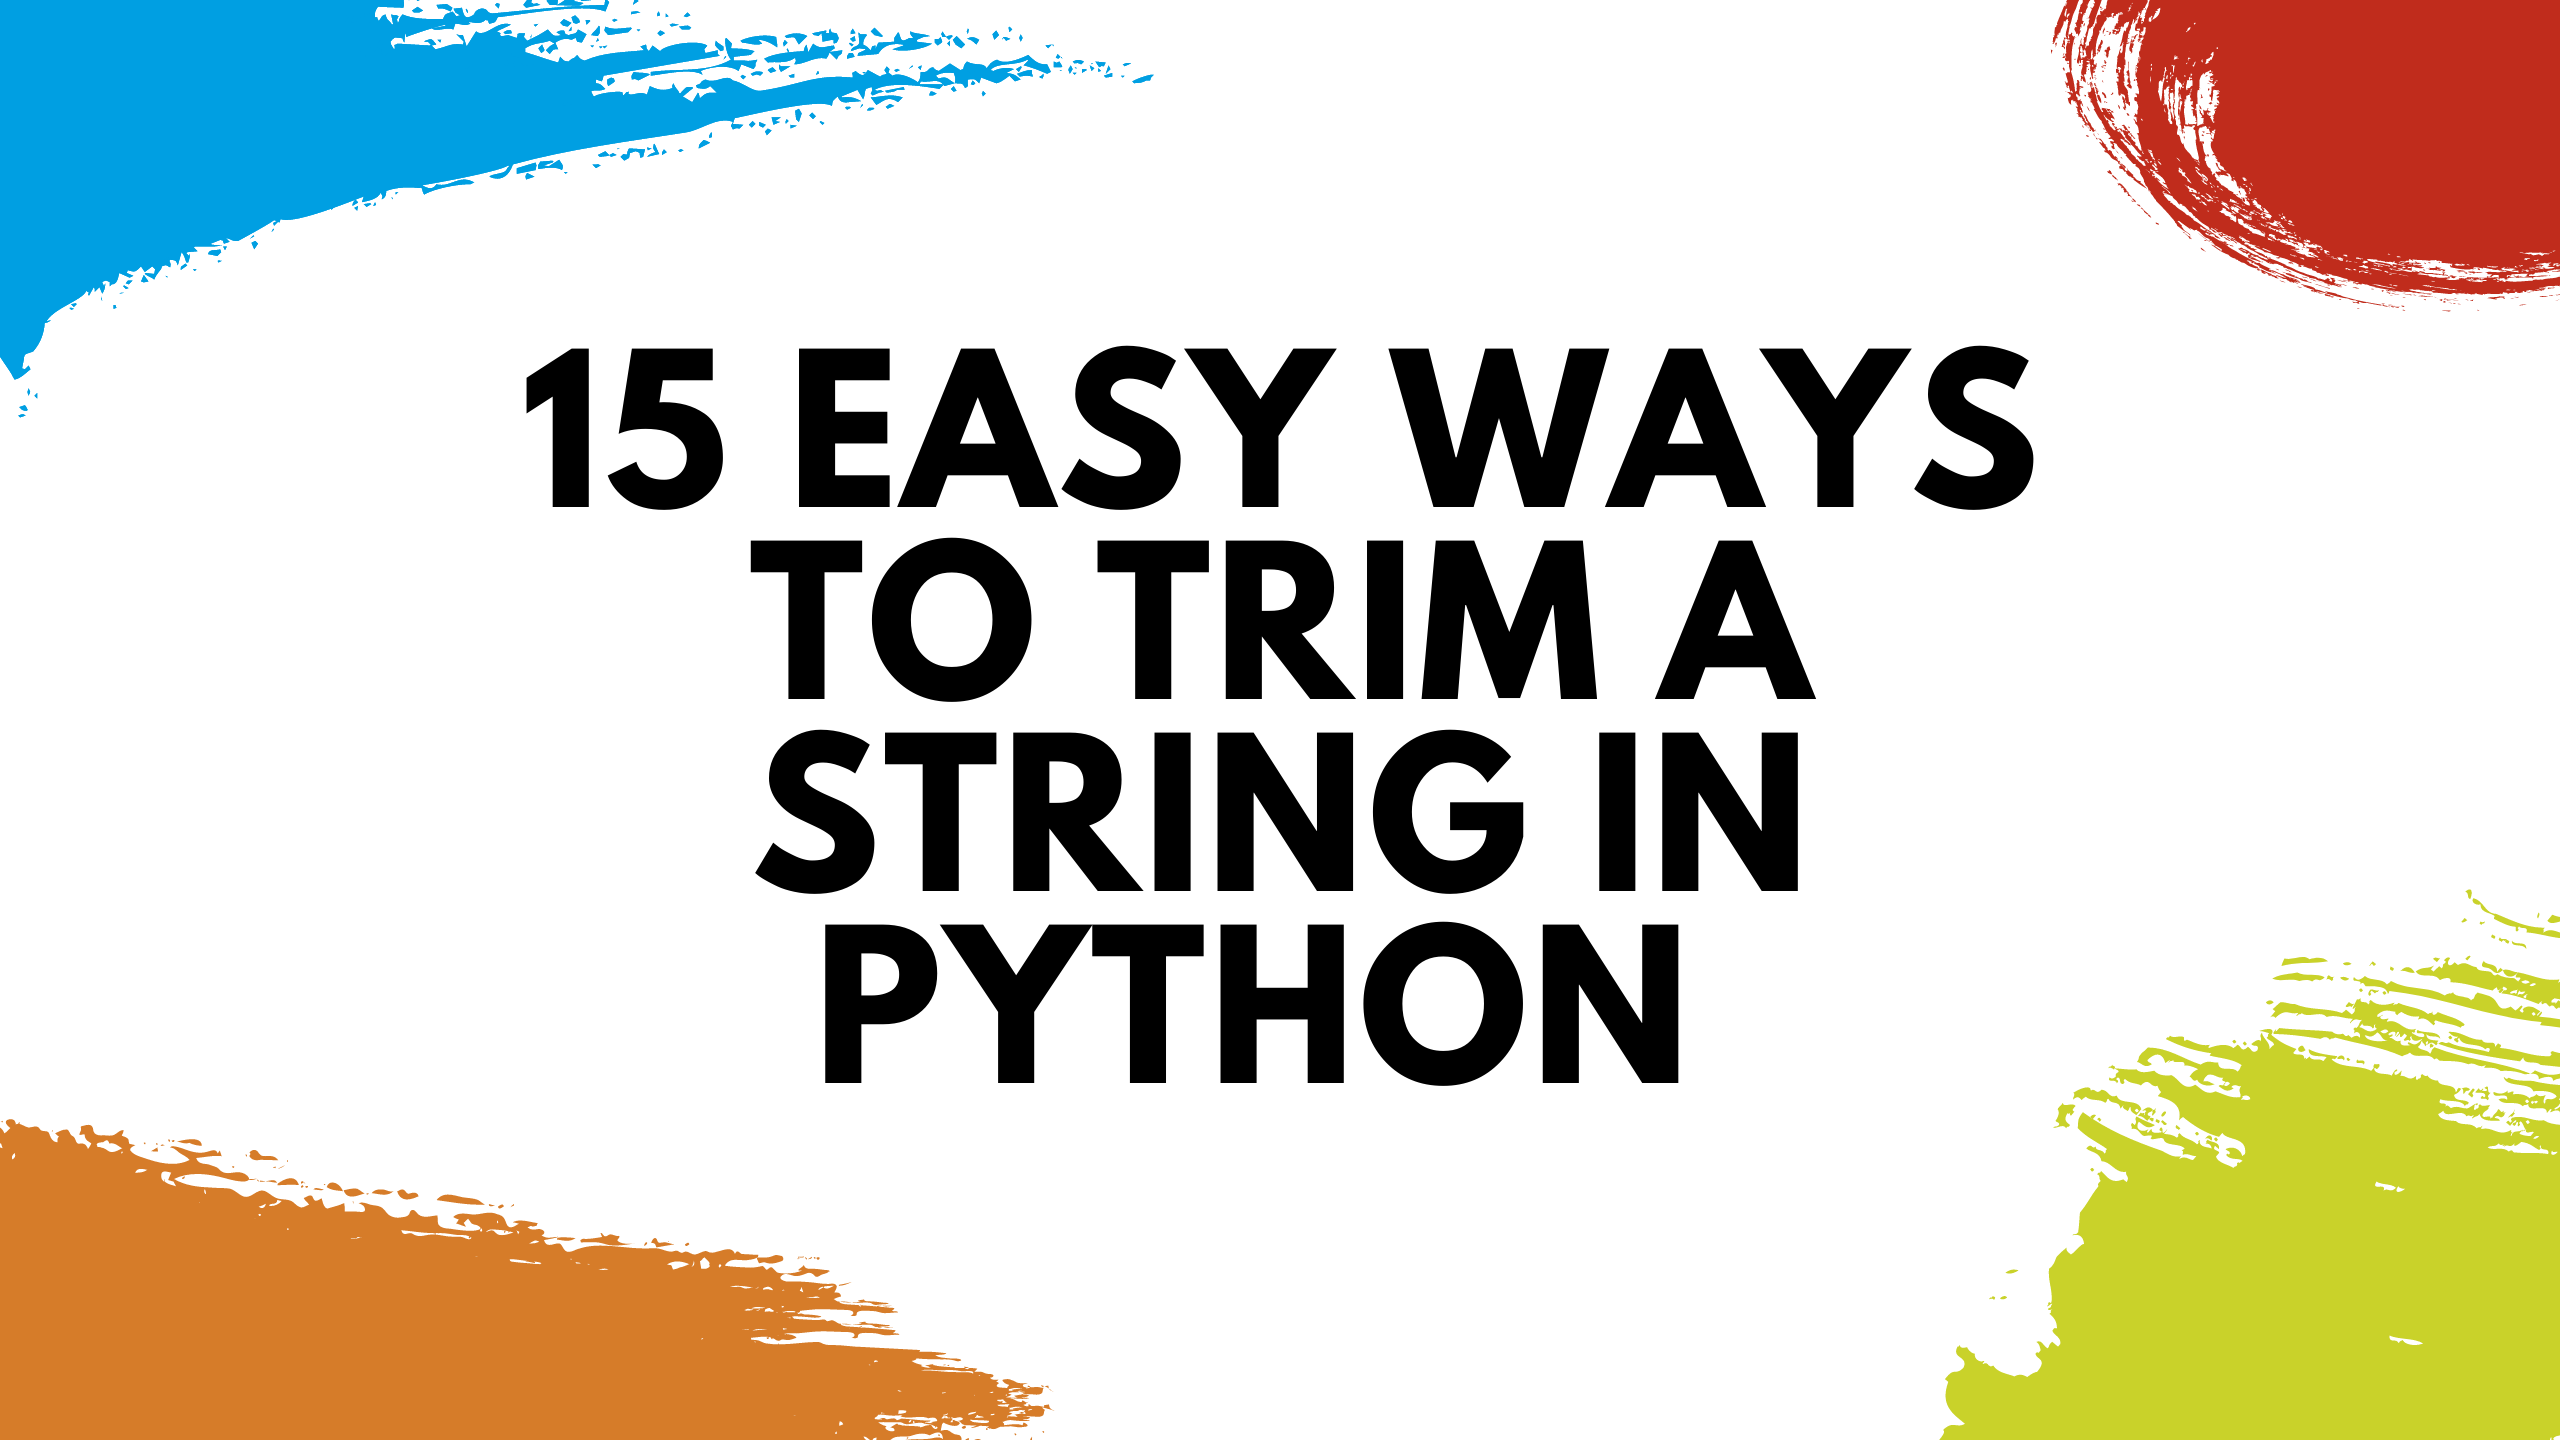 Trim python Python Program